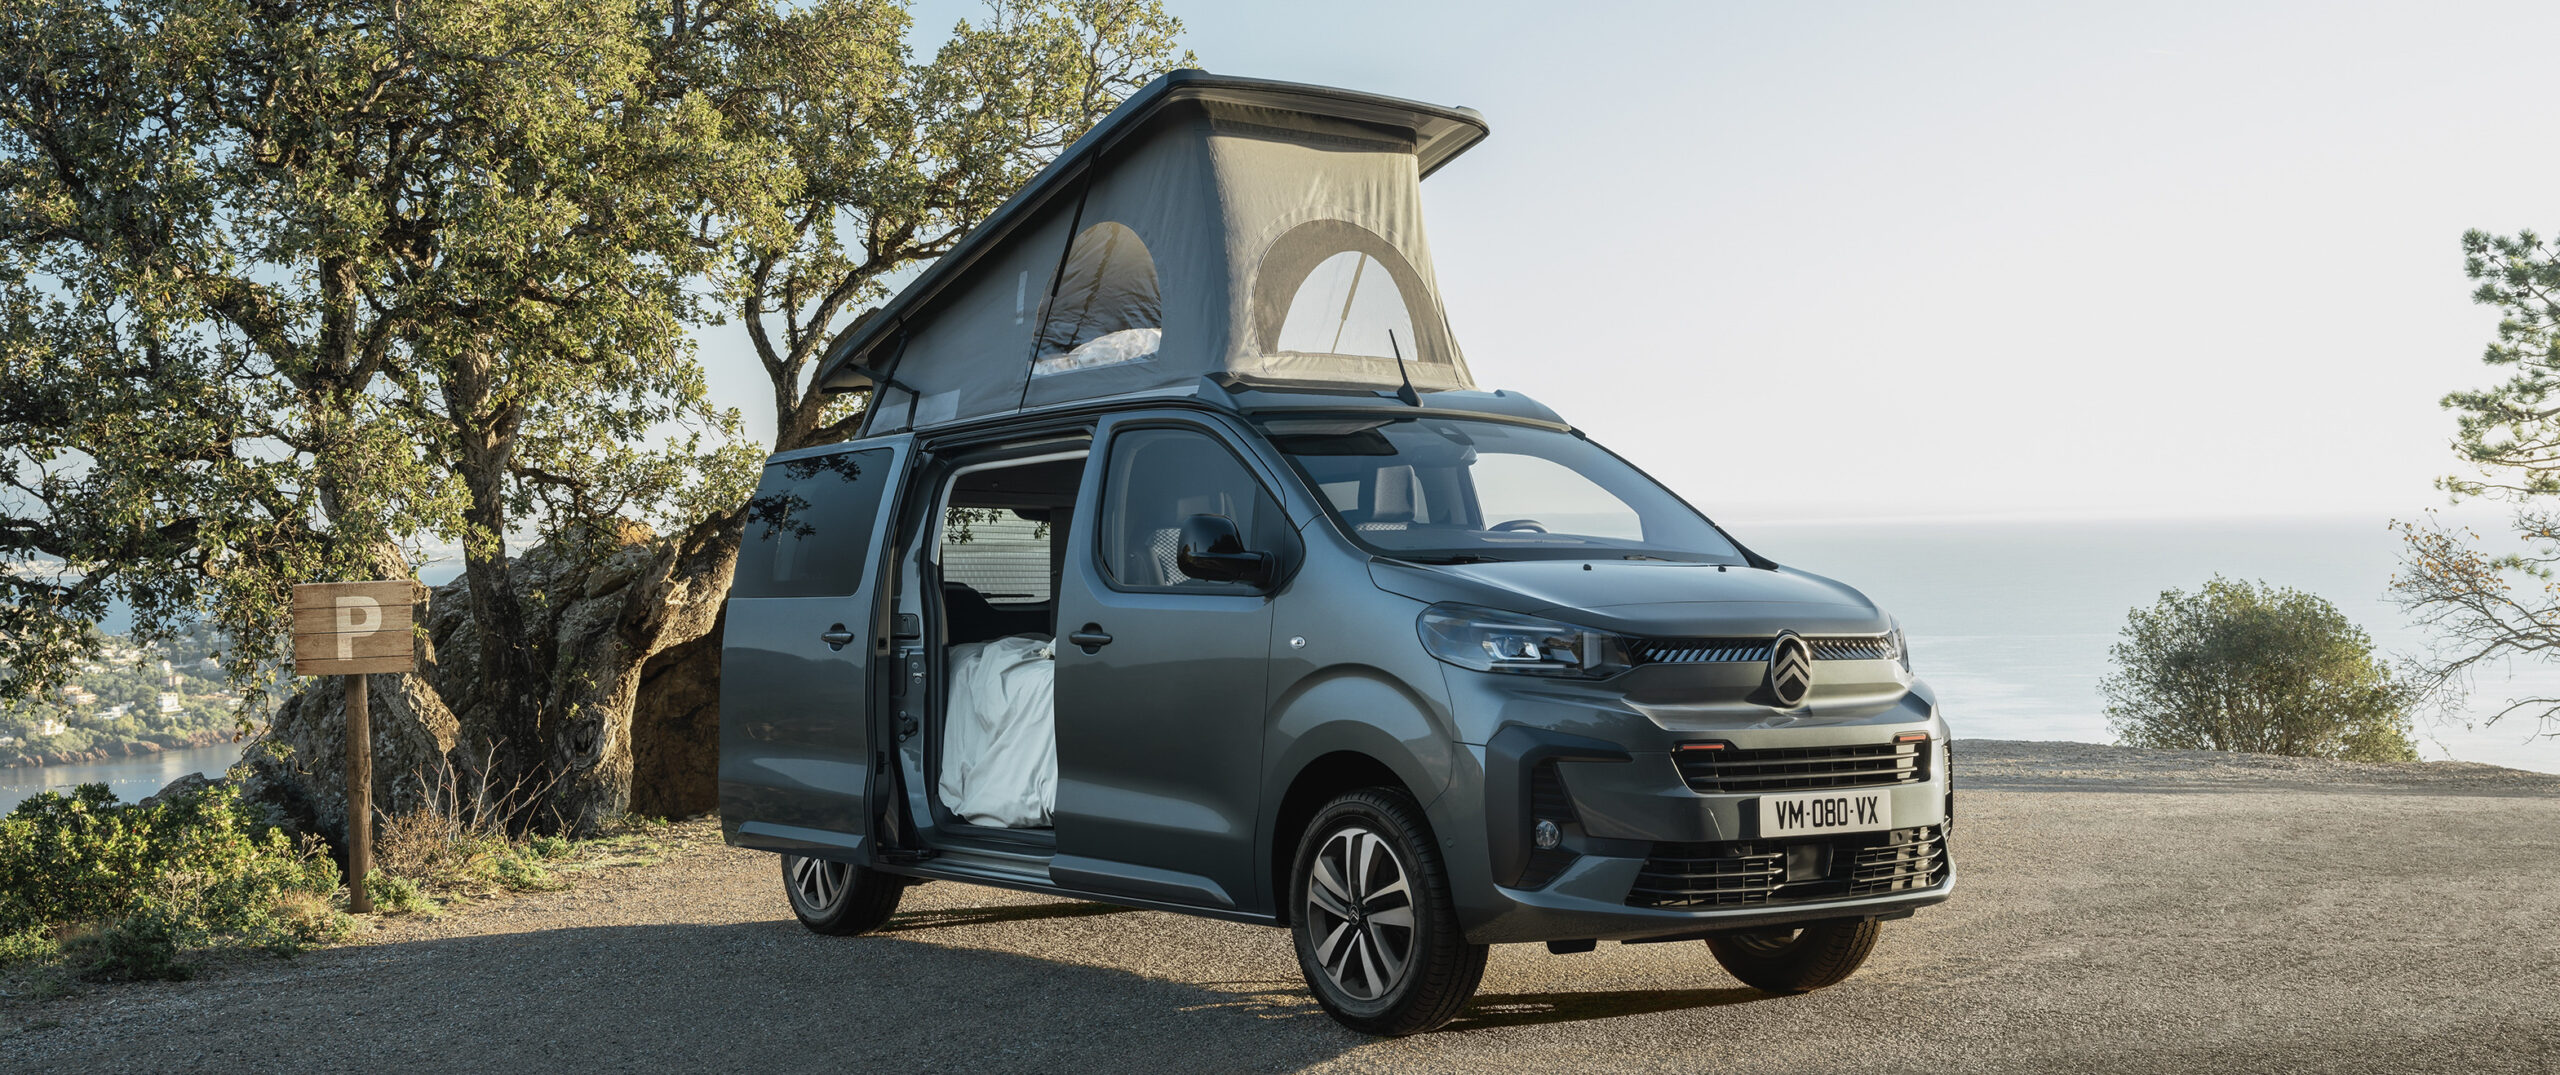 Citroën Holidays otra forma de disfrutar de los viajes